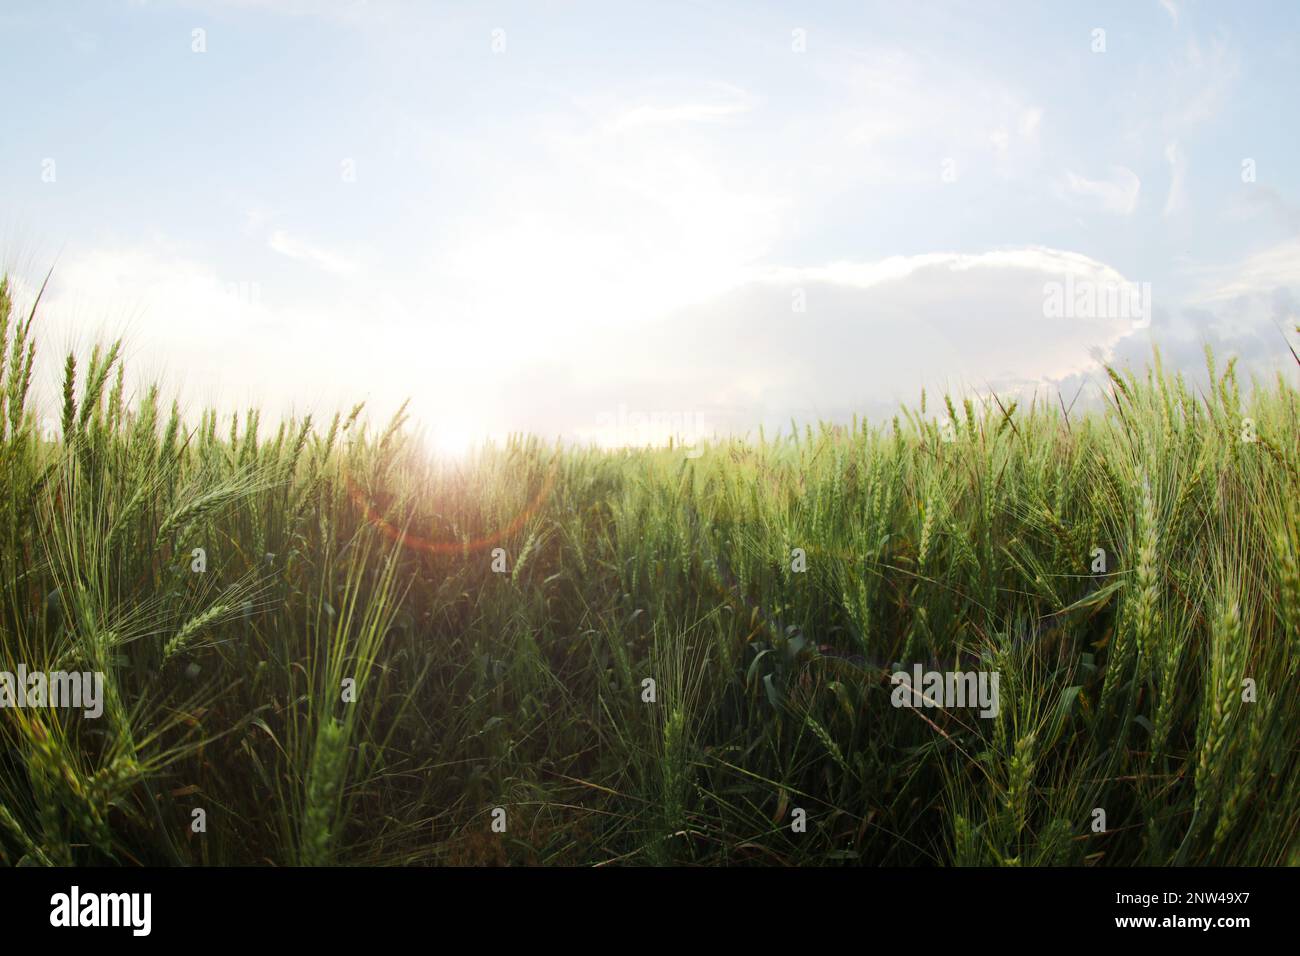 Beautiful view of wheat field, fish eye effect Stock Photo